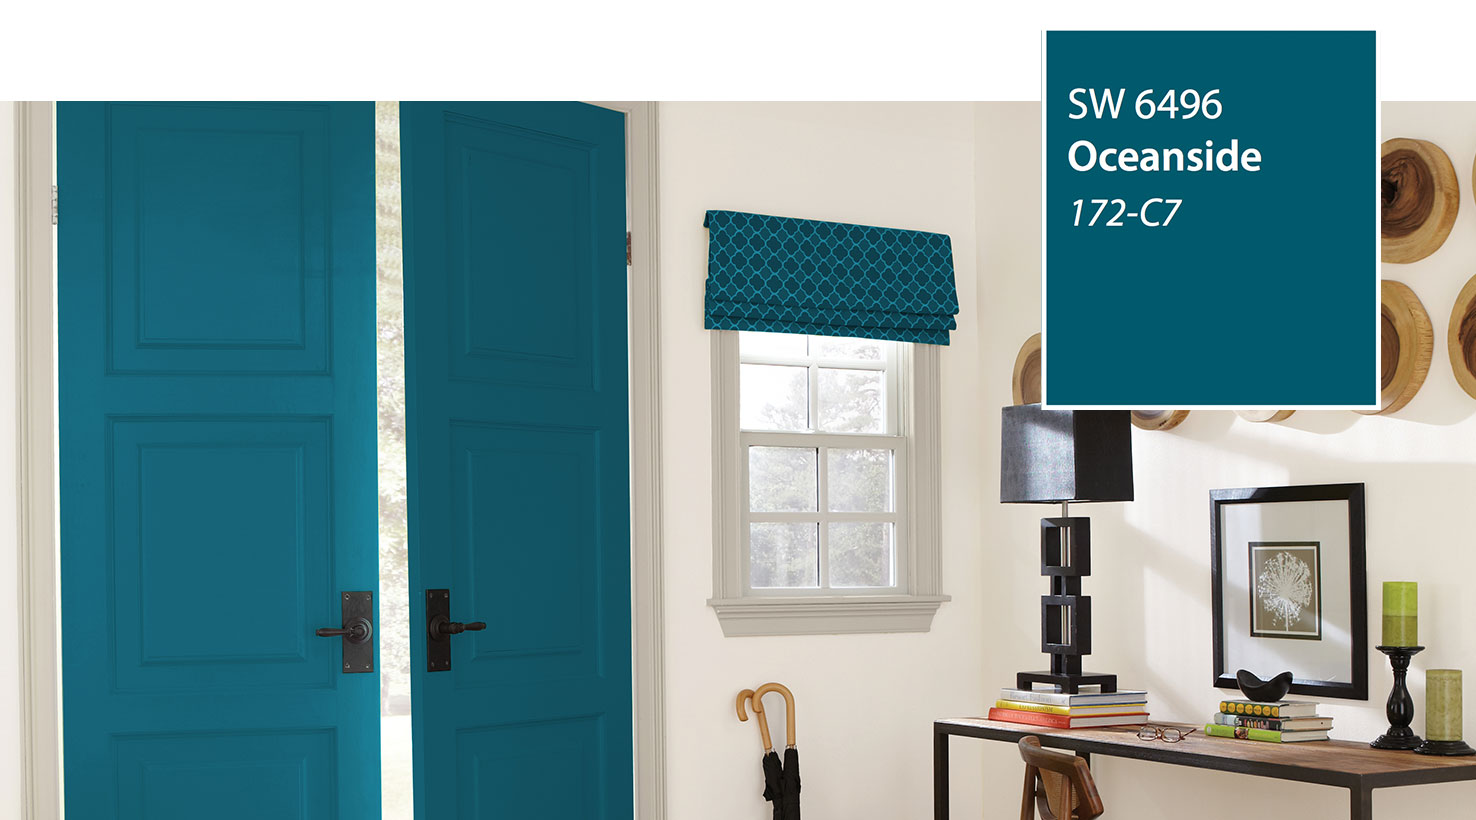 A blue door in an oceanside living room.